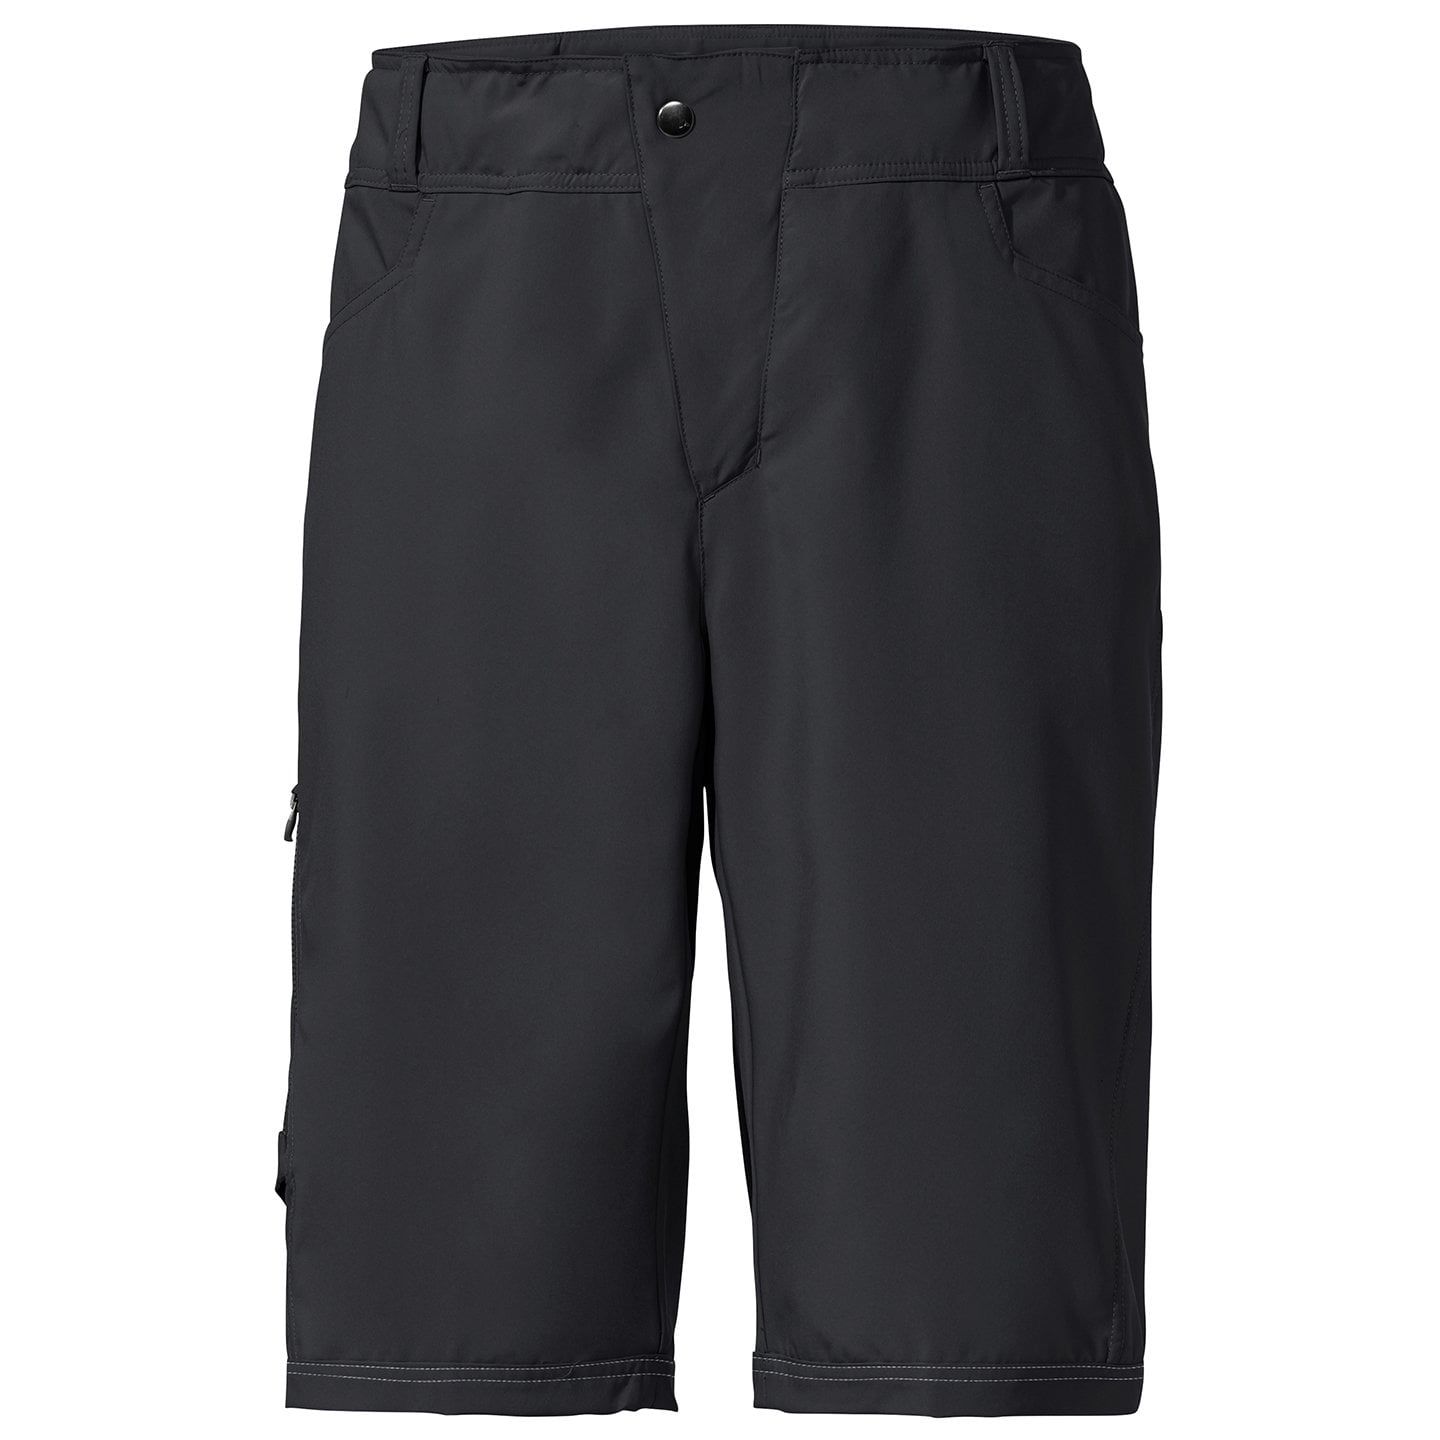 Bild von Bergzeit Men's Ledro Shorts